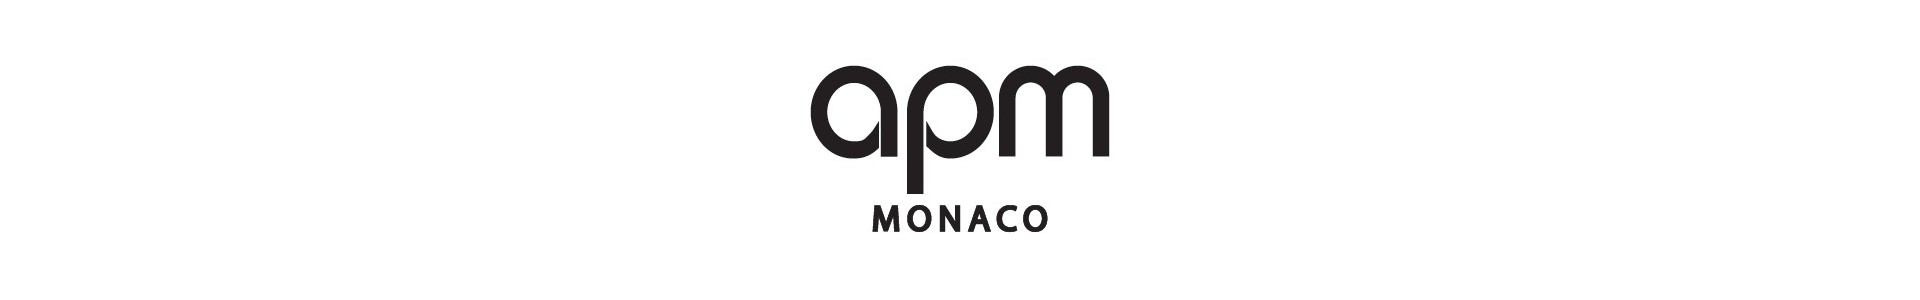 Bijoux APM Monaco - Boucles d'oreilles APM MONACO sur Planète Bijouterie.